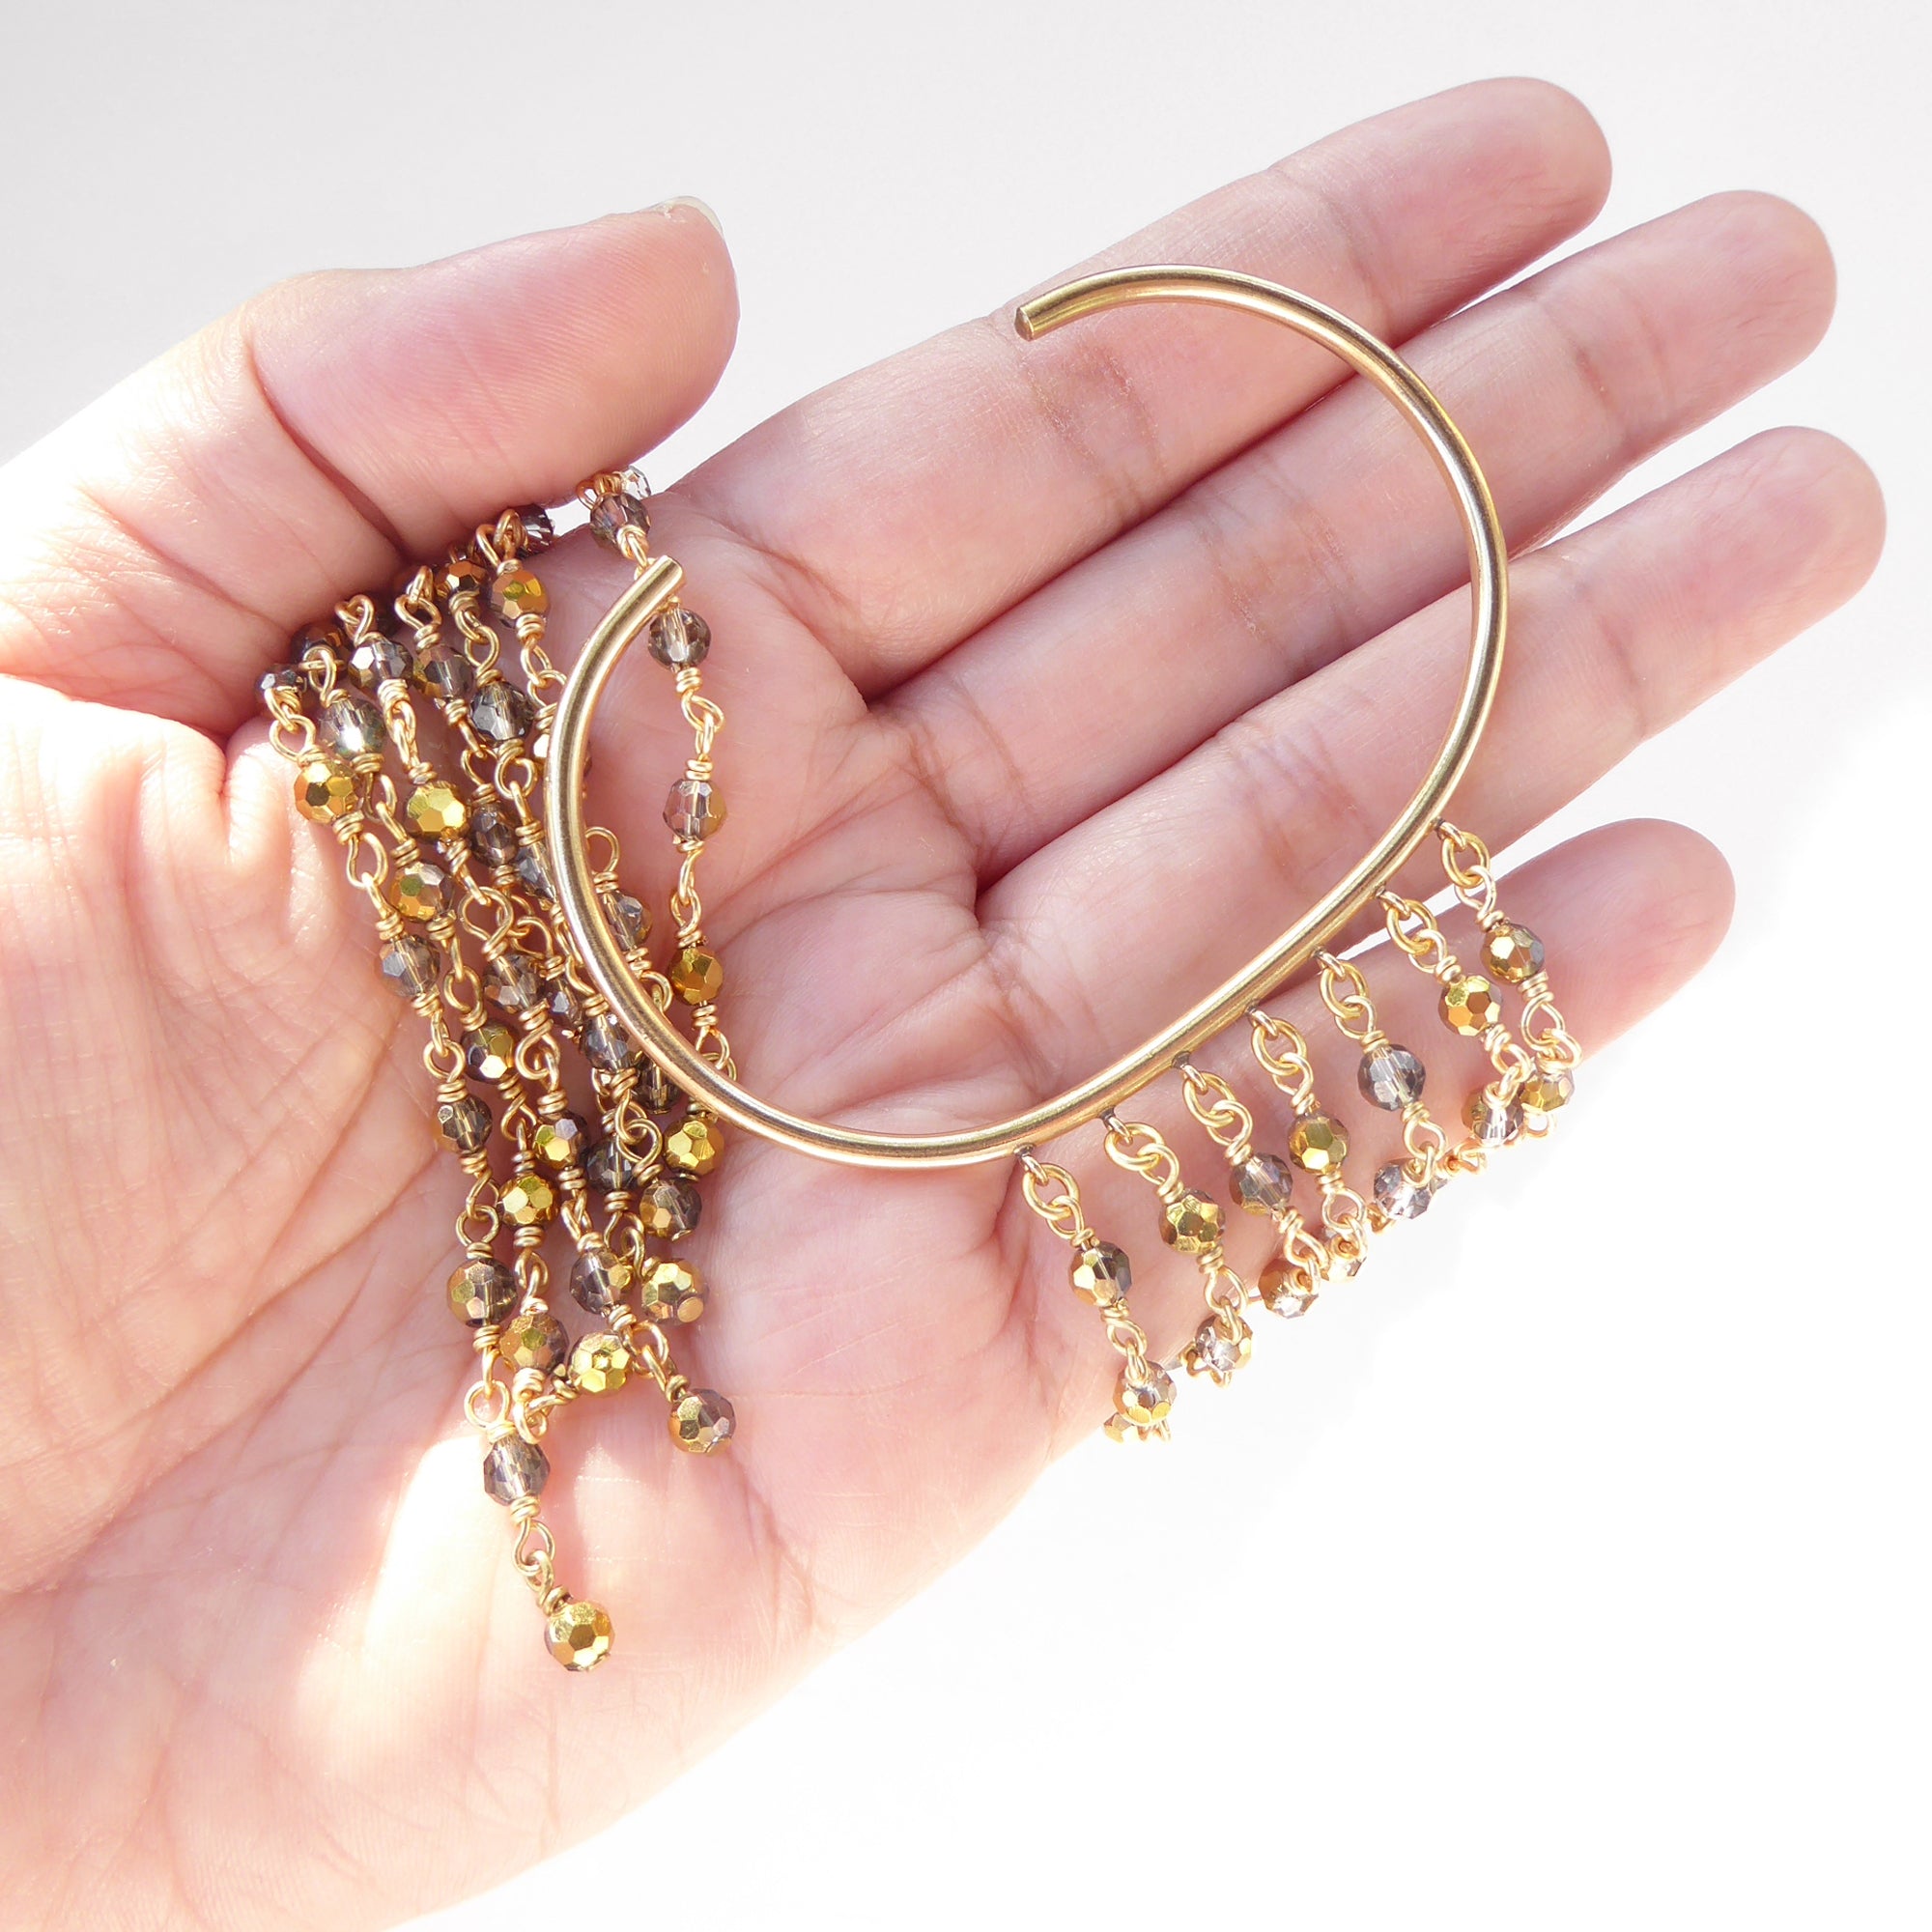 Gold filled crystal fringe bracelet by Jenny Dayco 5